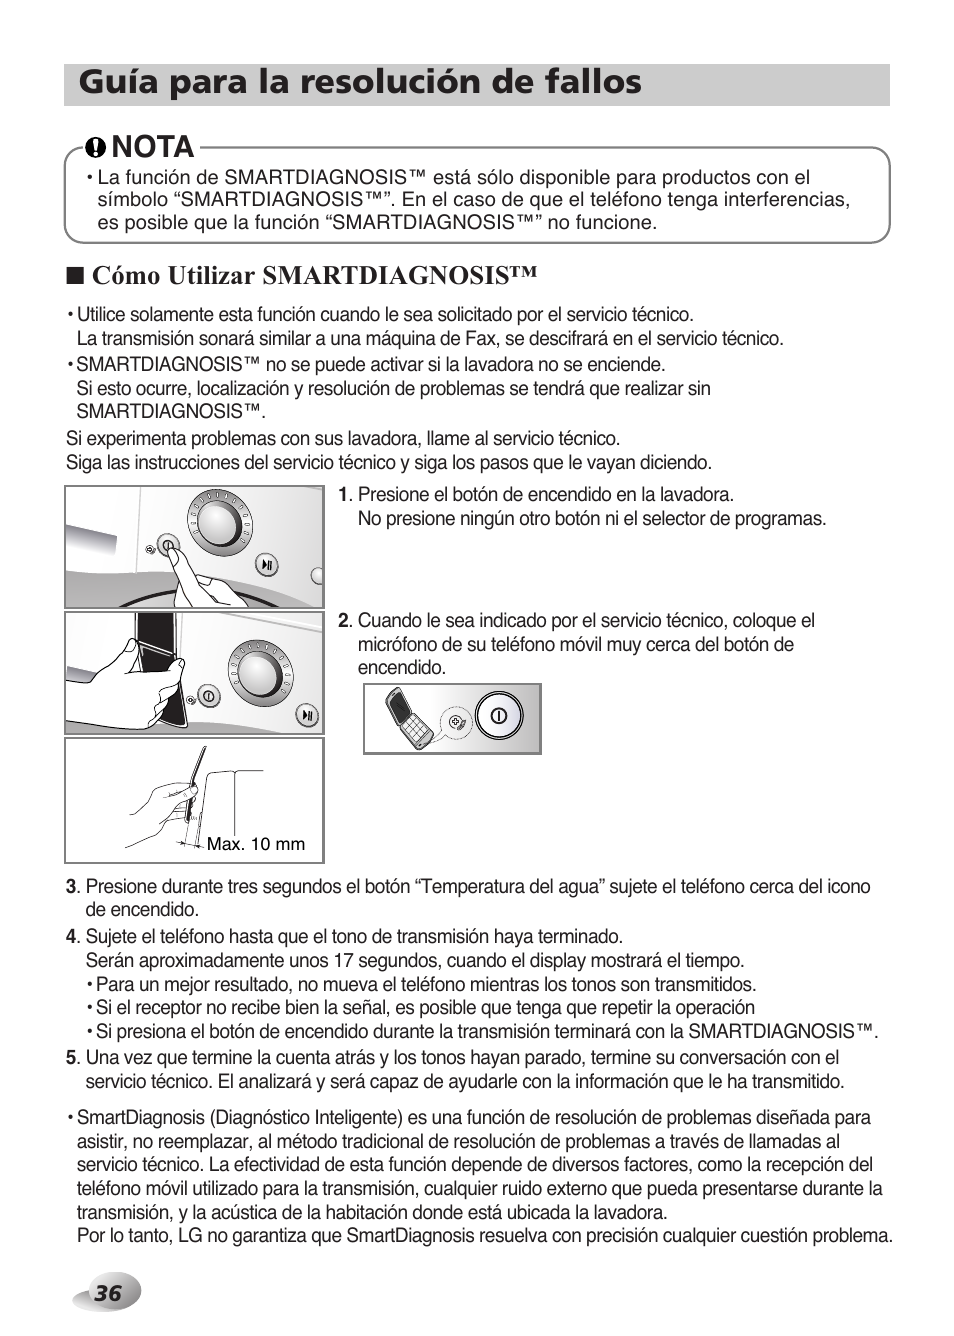 Guía para la resolución de fallos, Nota, Cómo utilizar smartdiagnosis | LG F1480TD Manual del usuario | Página 36 / 44